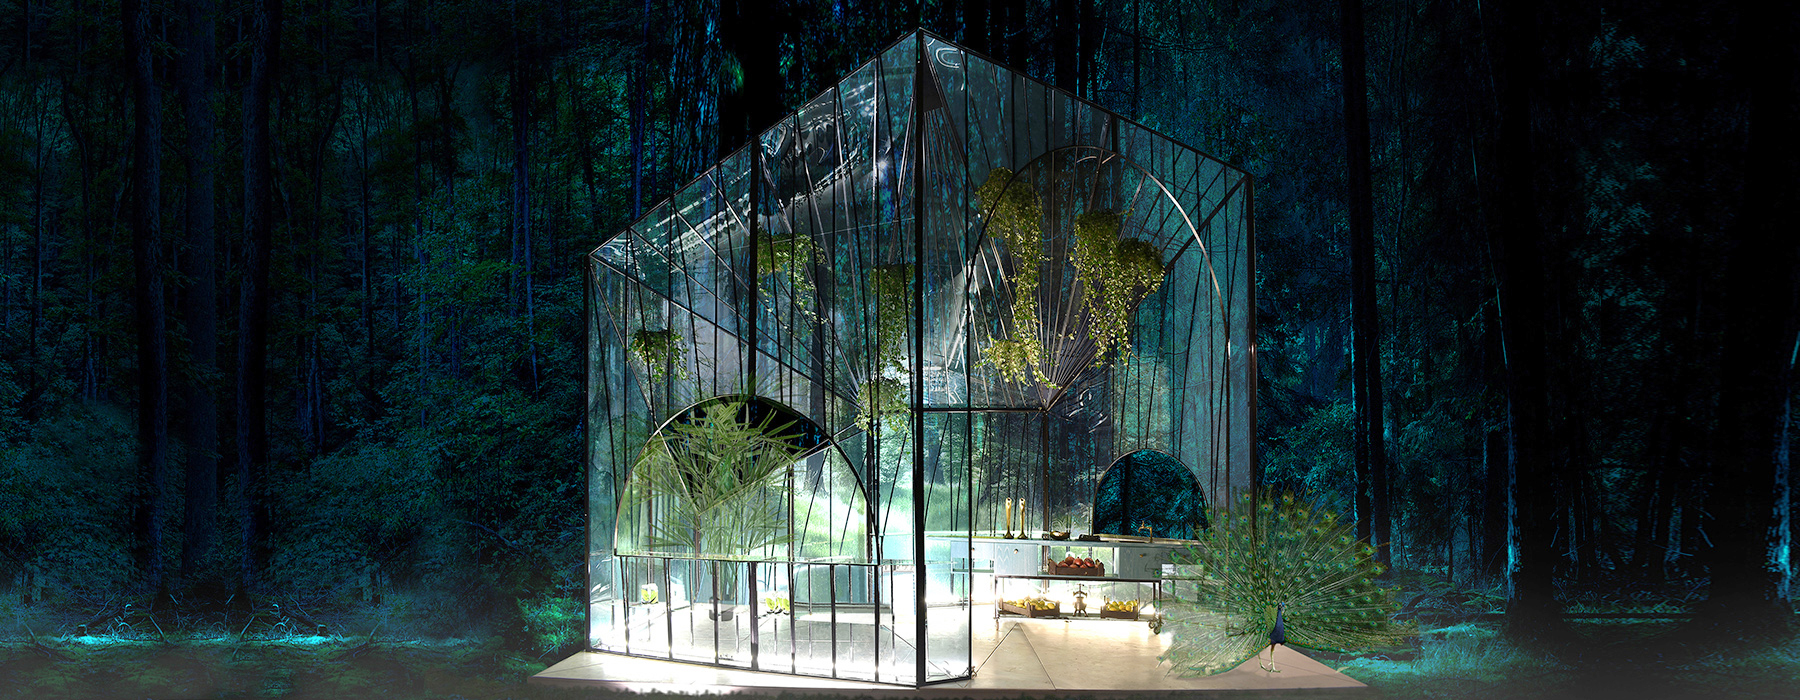 314 architecture studio sculpts bfresh spitiko pavilion as a greenhouse prism